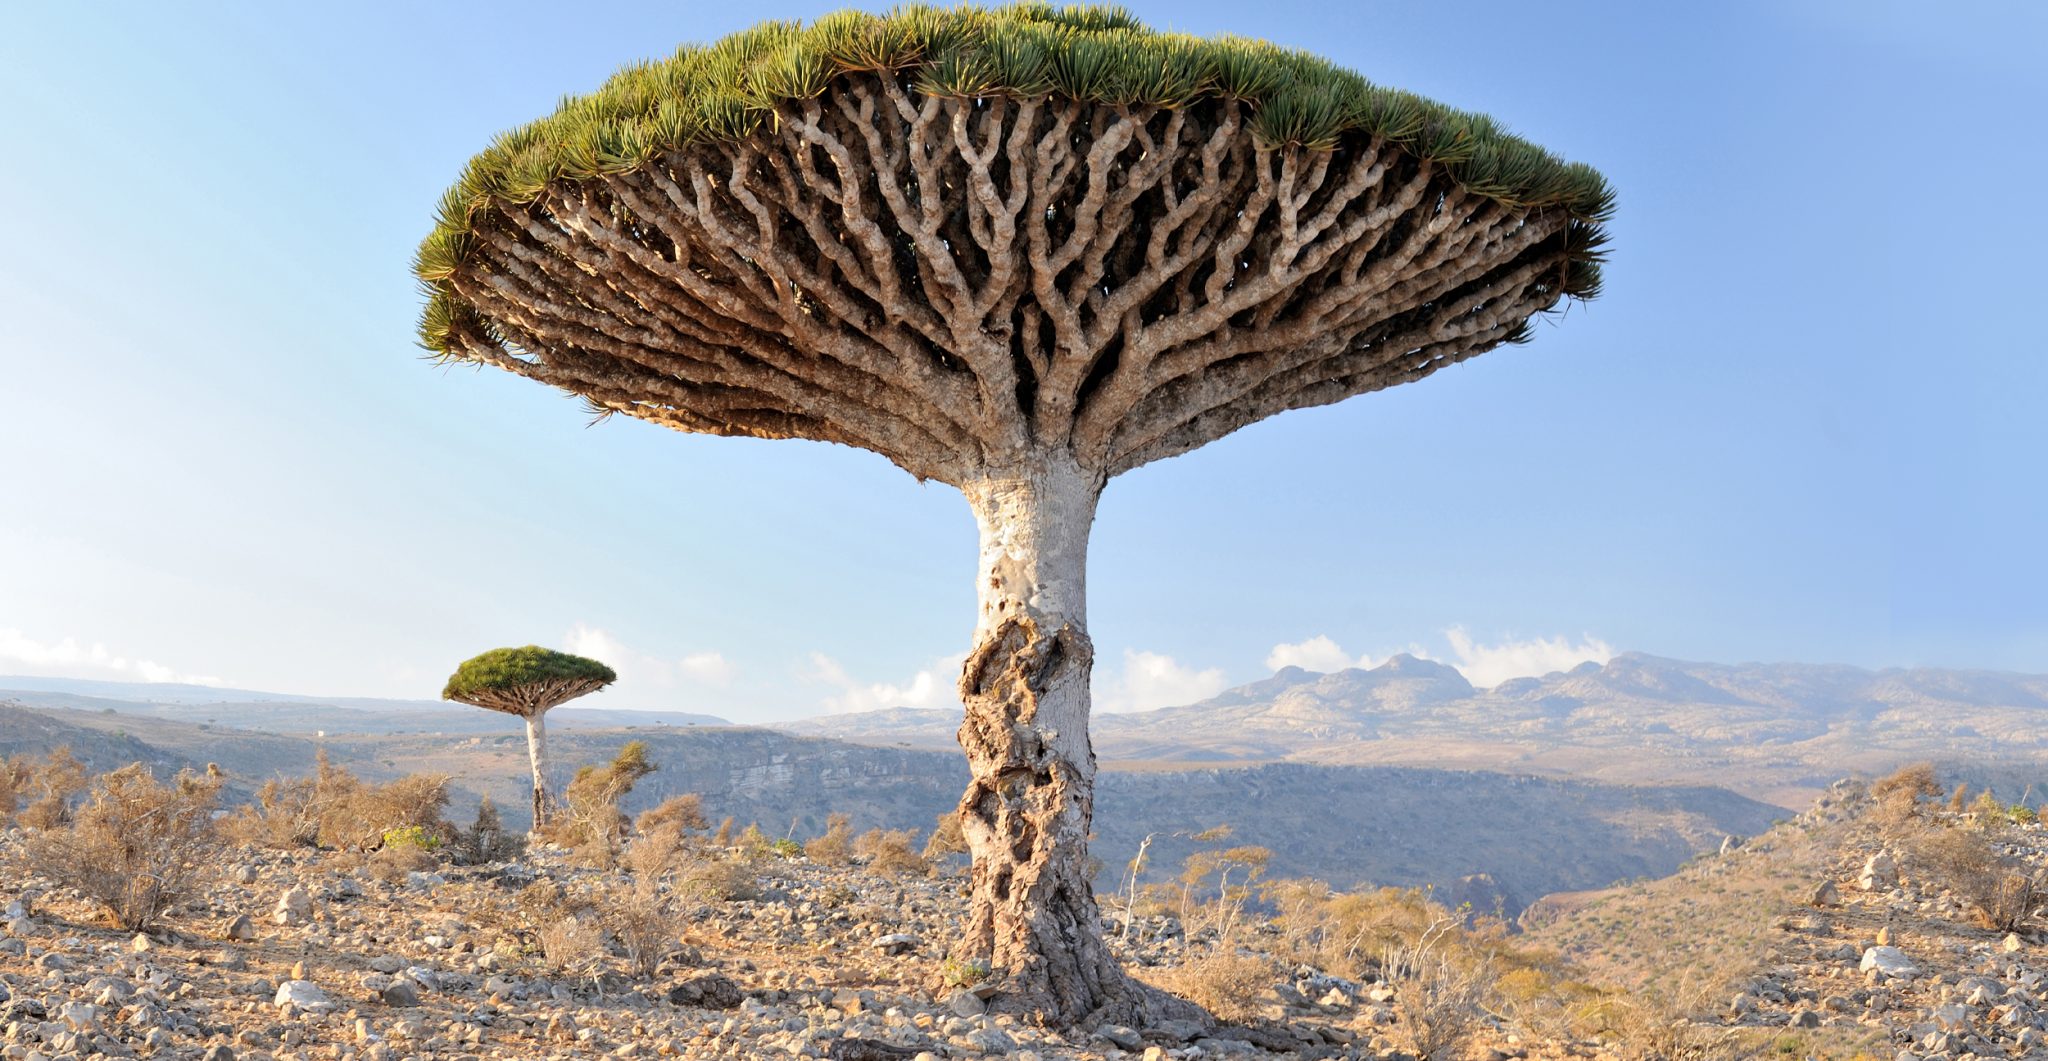 Dragon tree of Socotra